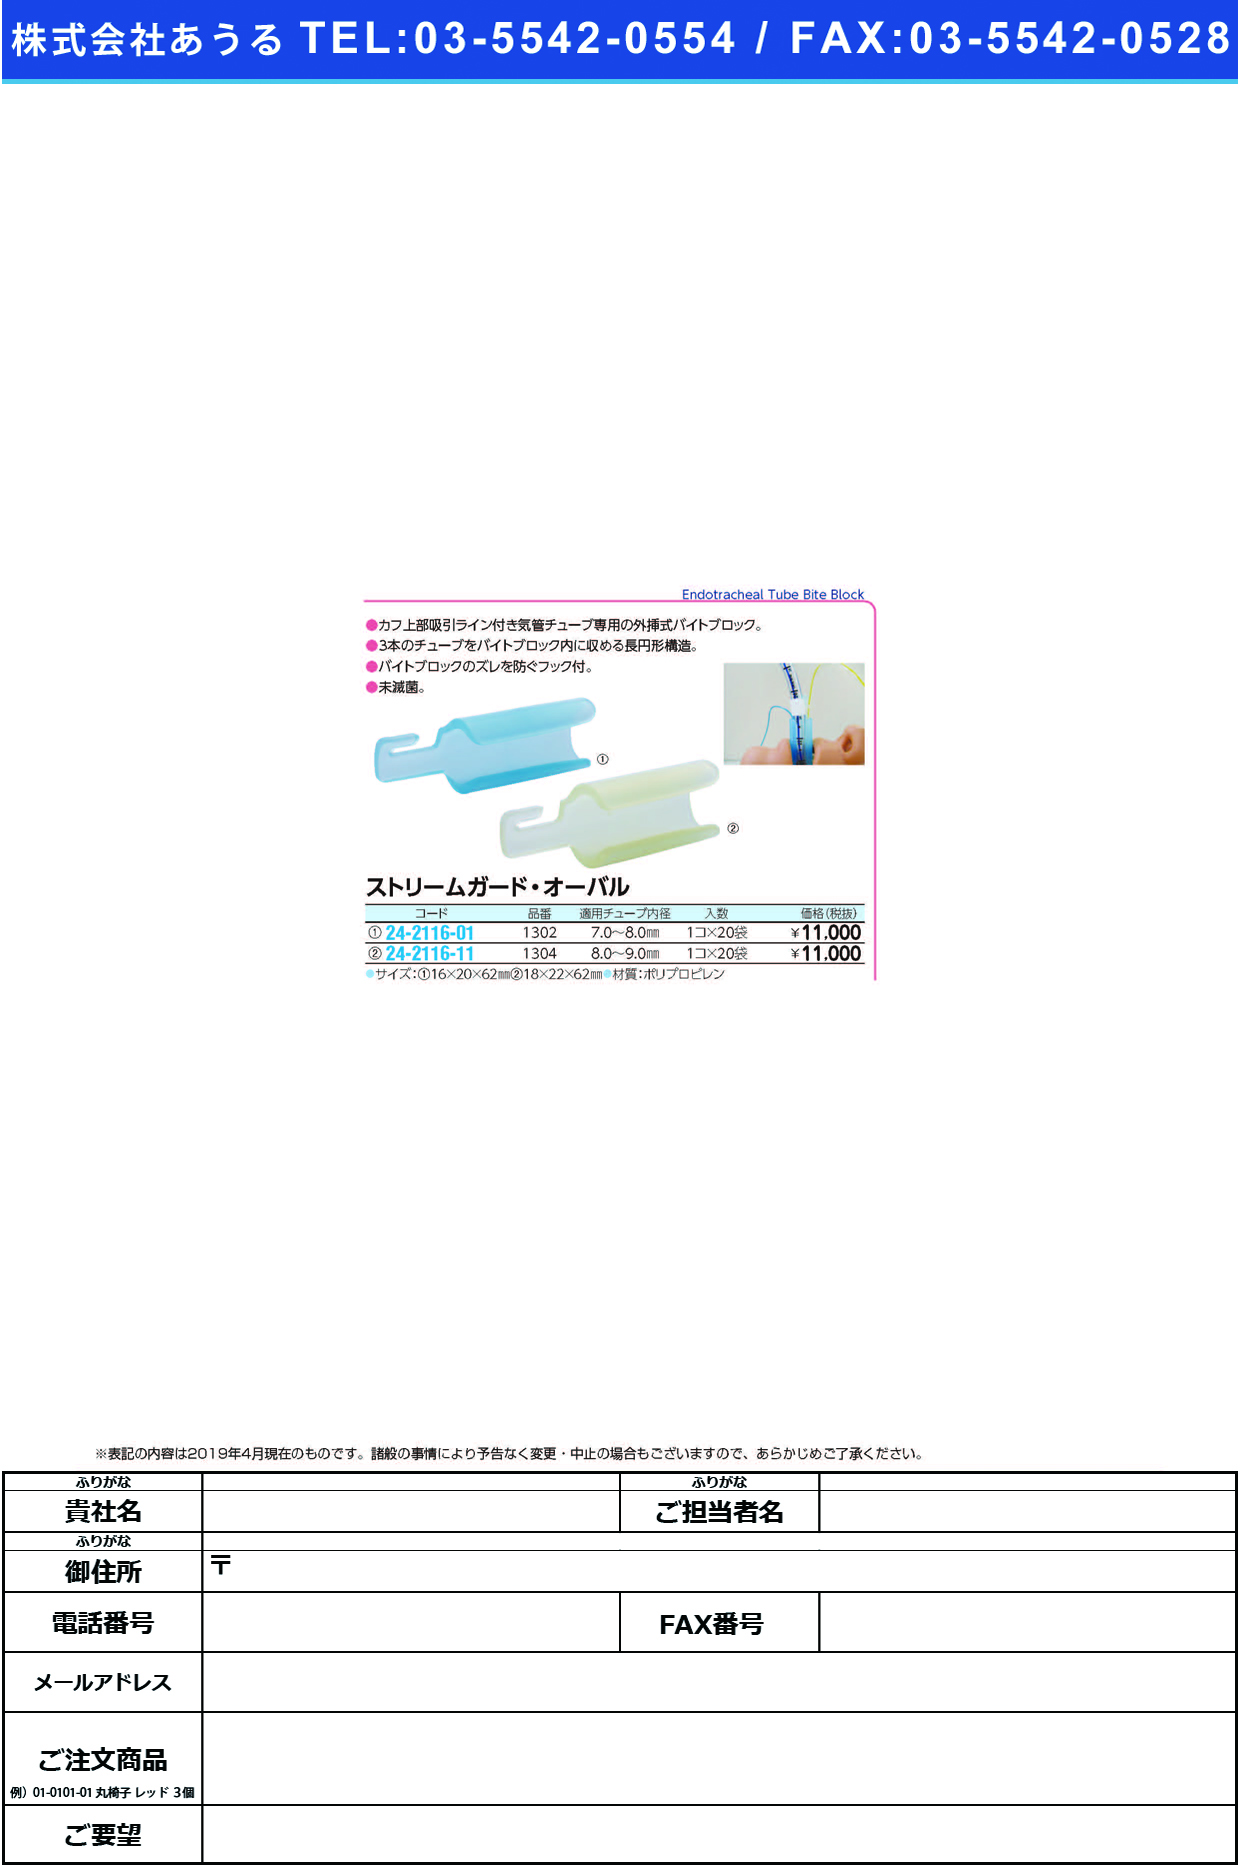 (24-2116-01)ストリームガード・オーバル 1302(20ｺｲﾘ) ｽﾄﾘｰﾑｶﾞｰﾄﾞ･ｵｰﾊﾞﾙ【1箱単位】【2019年カタログ商品】